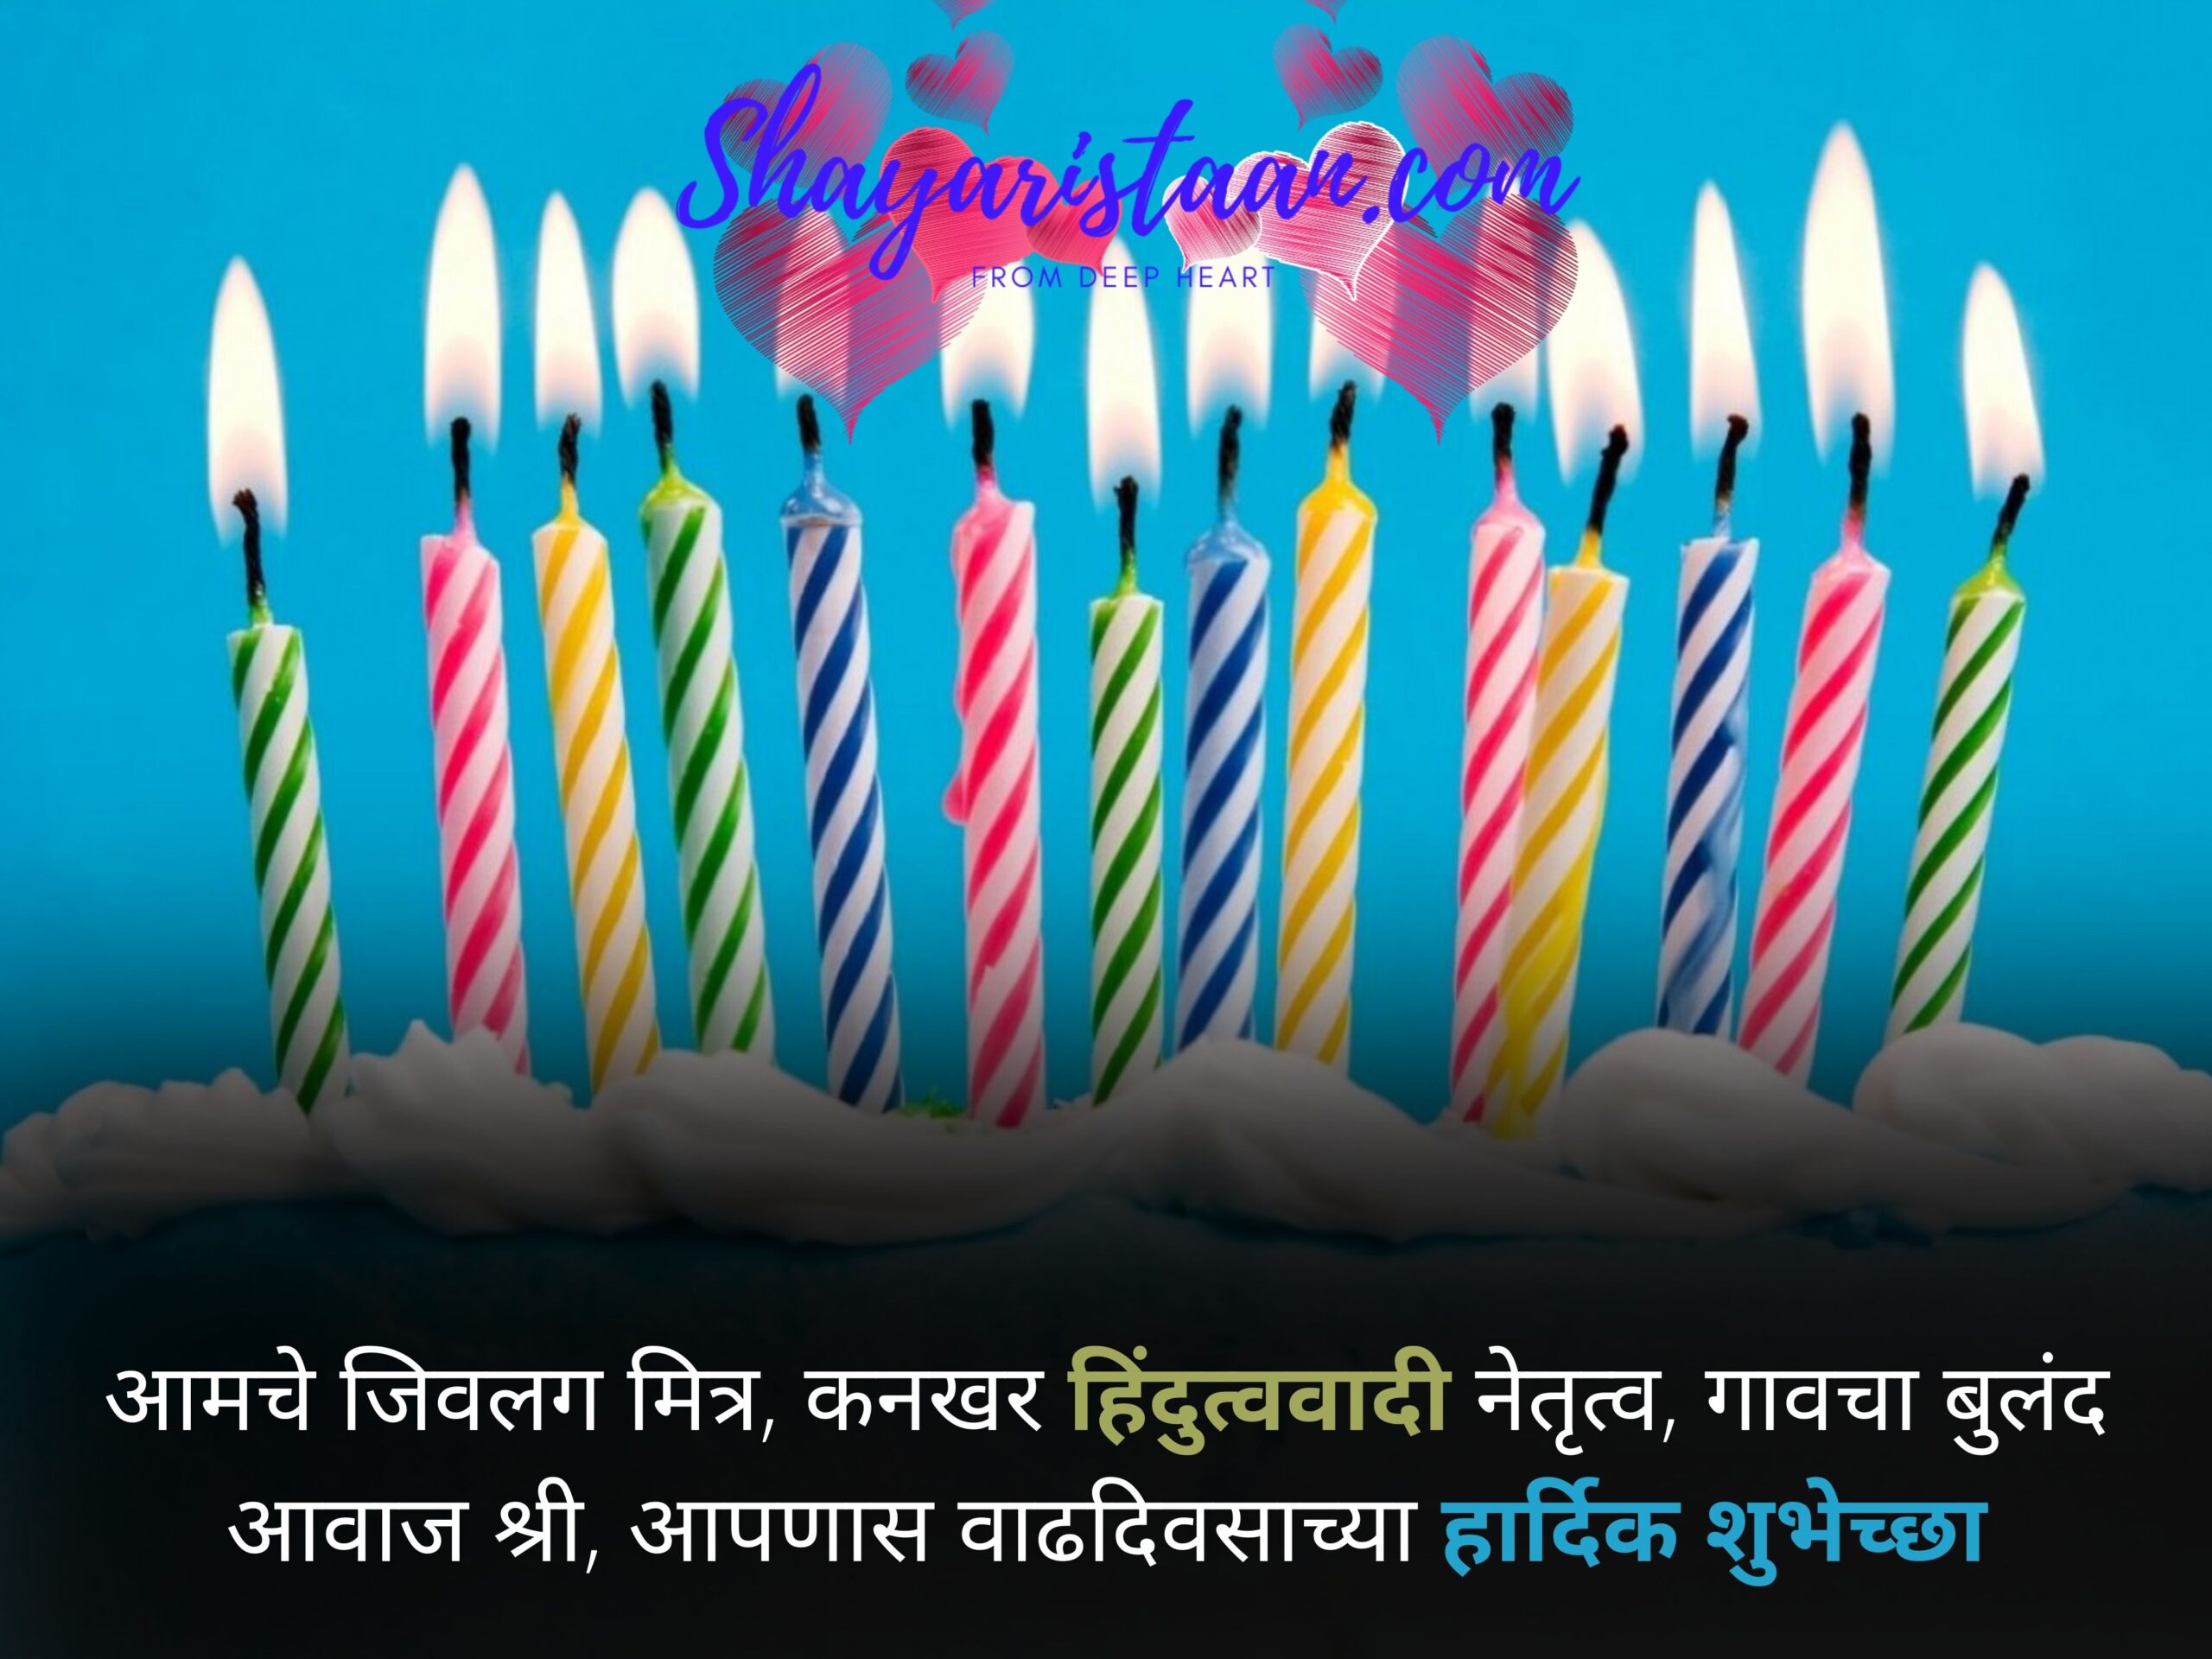 birthday wishes marathi  | आमचे जिवलग मित्र, कनखर हिंदुत्ववादी नेतृत्व,  गावचा बुलंद आवाज श्री, आपणास वाढदिवसाच्या हार्दिक शुभेच्छा |